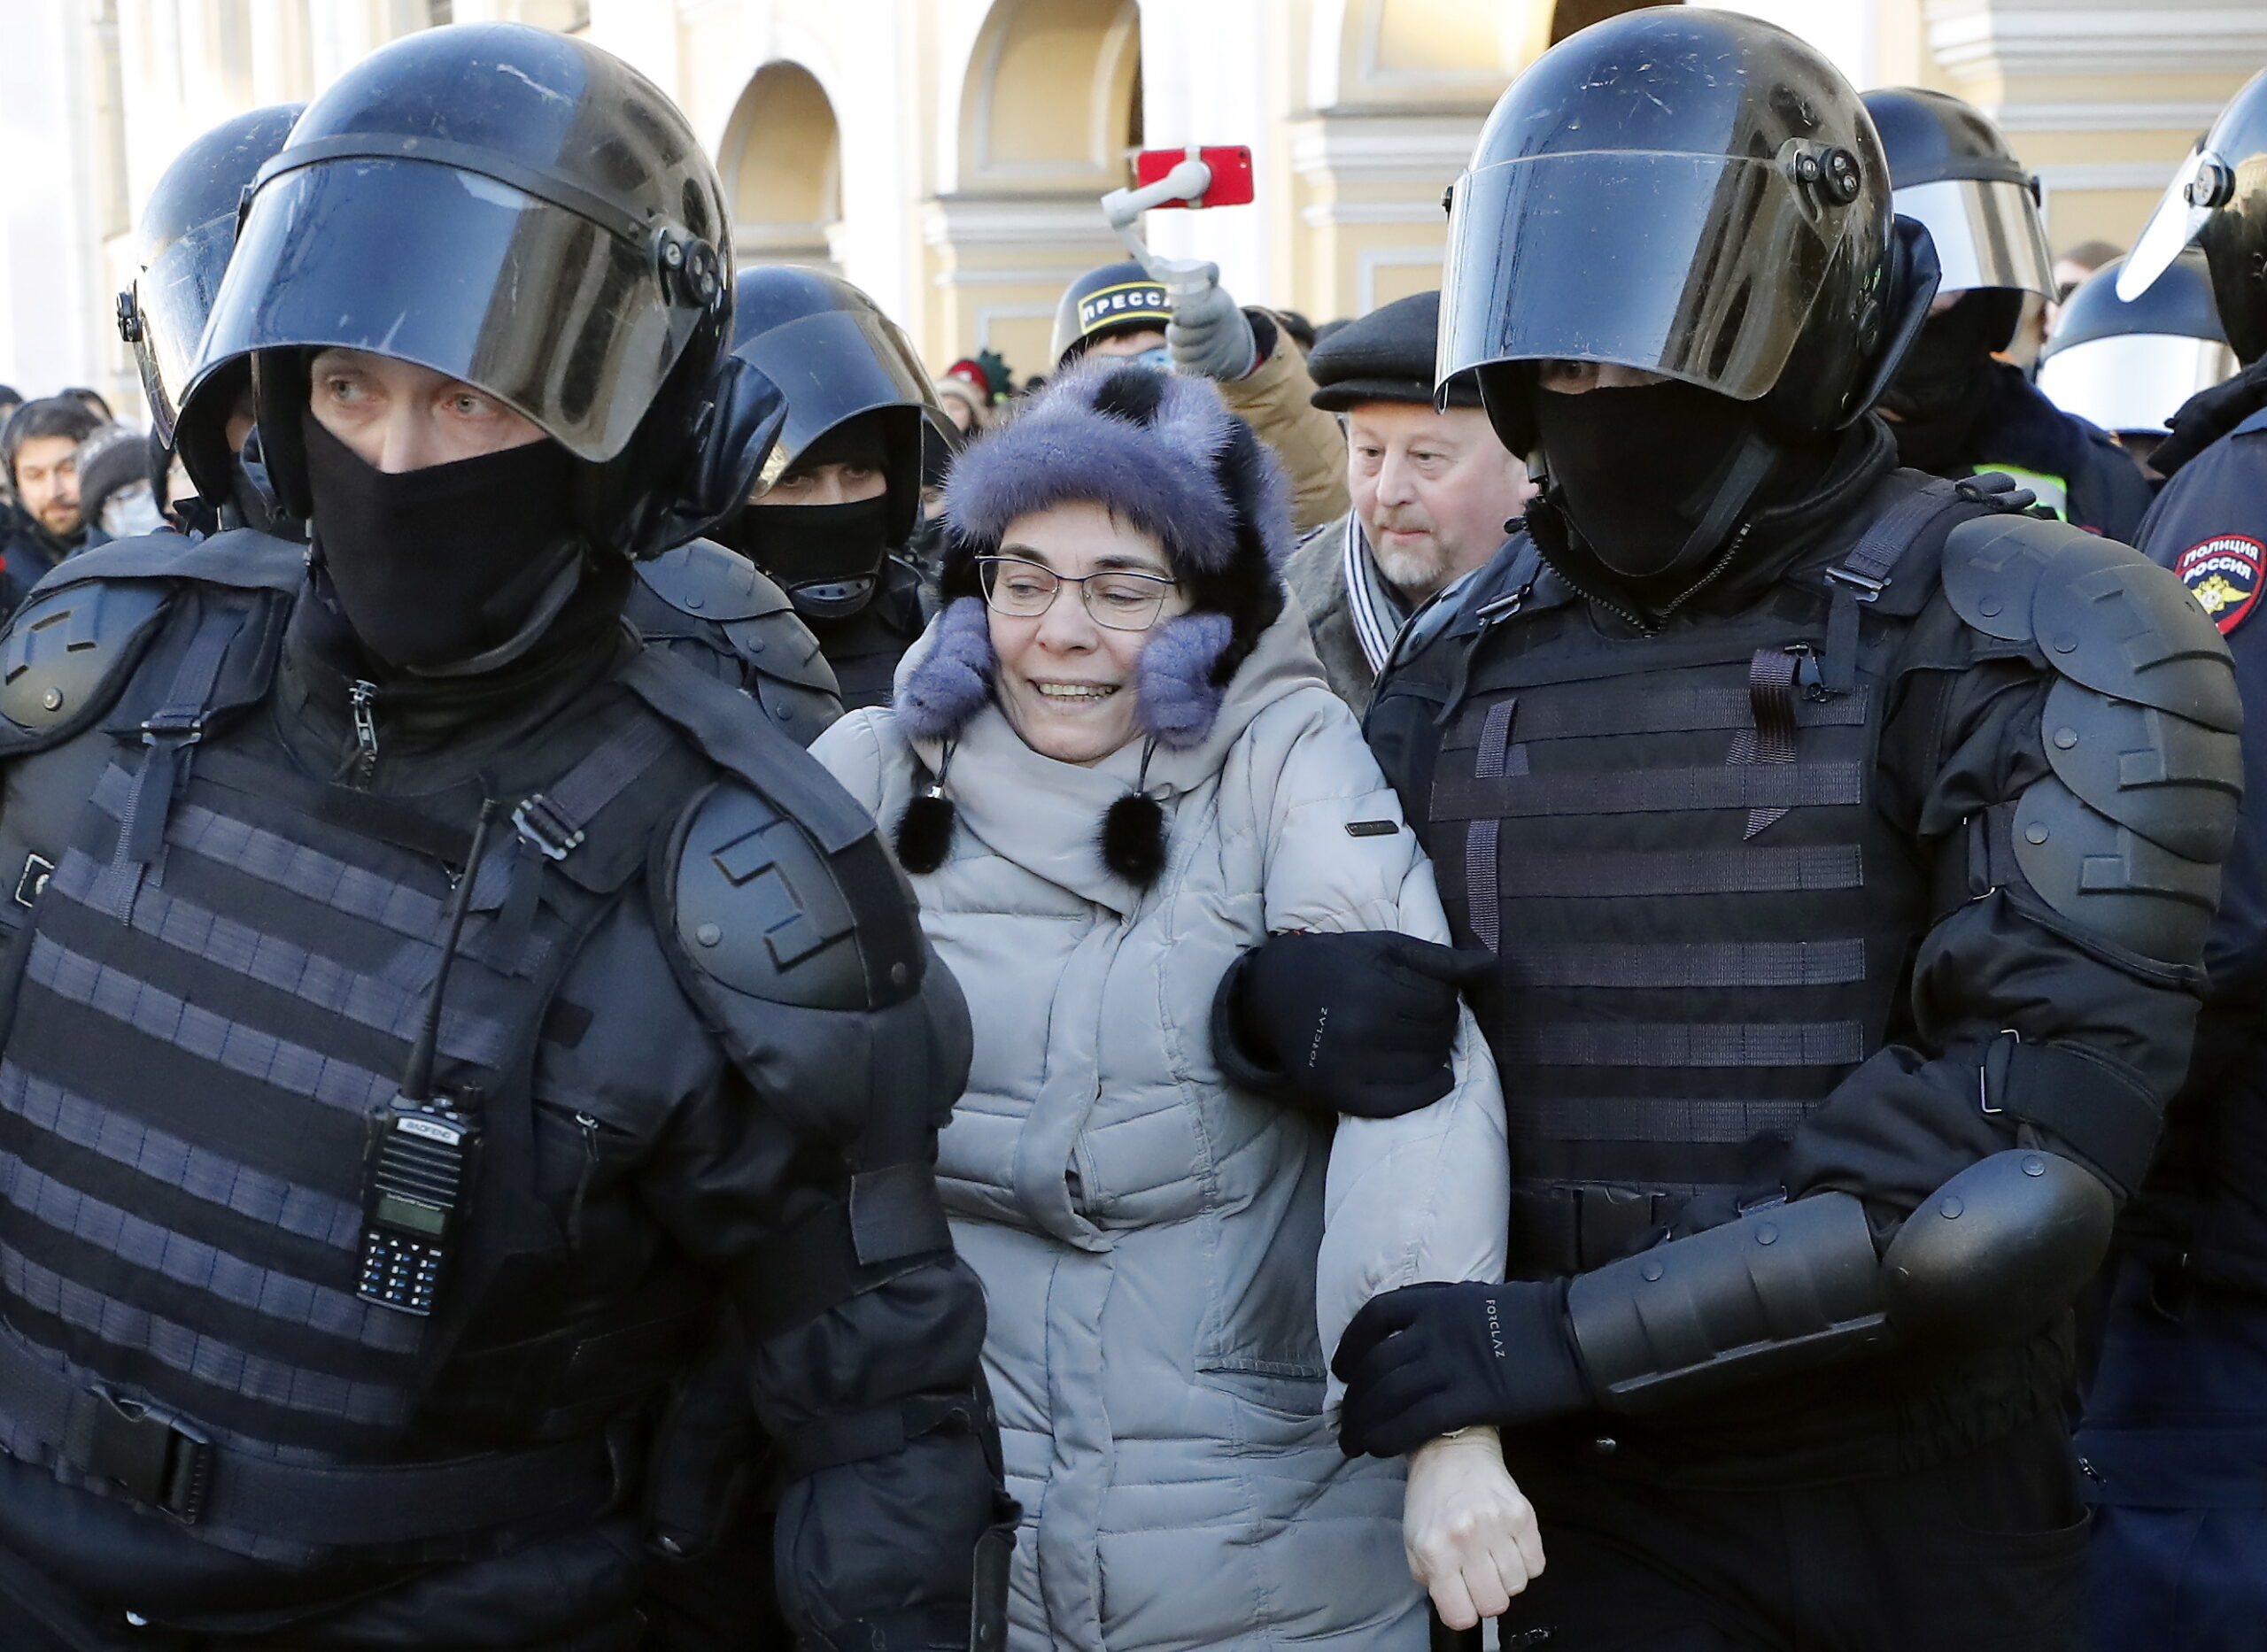 Полиция задержала участников митинга против вторжения России в Украину. Санкт-Петербург. 27 февраля 2022 года. Фото ANATOLY MALTSEV/EPA/Scanpix/LETA